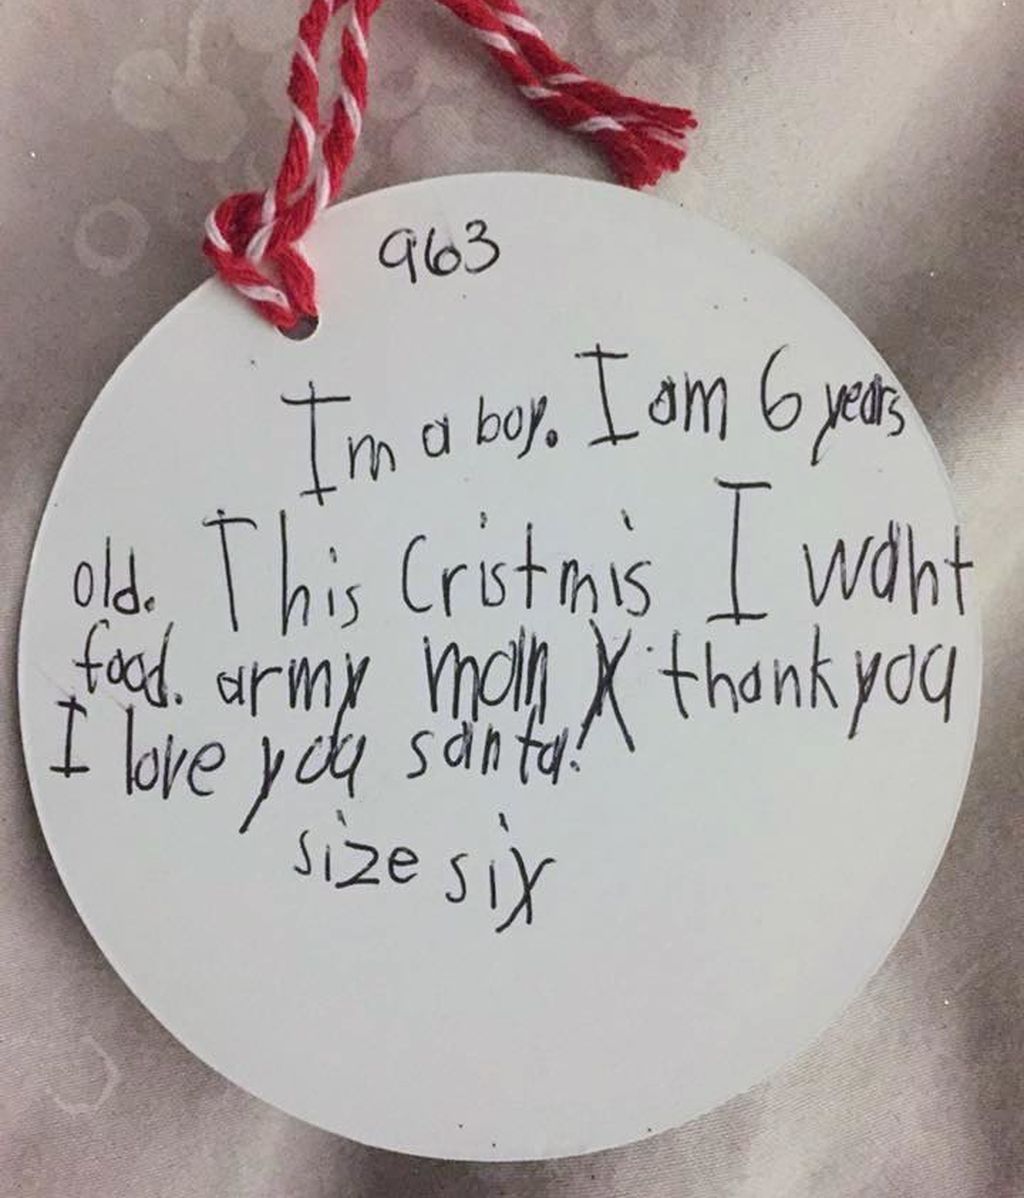 Otro escribió: "Soy un chico. Tengo 6 años. Estas Navidades quiero comida, gracias. Te amo Santa."